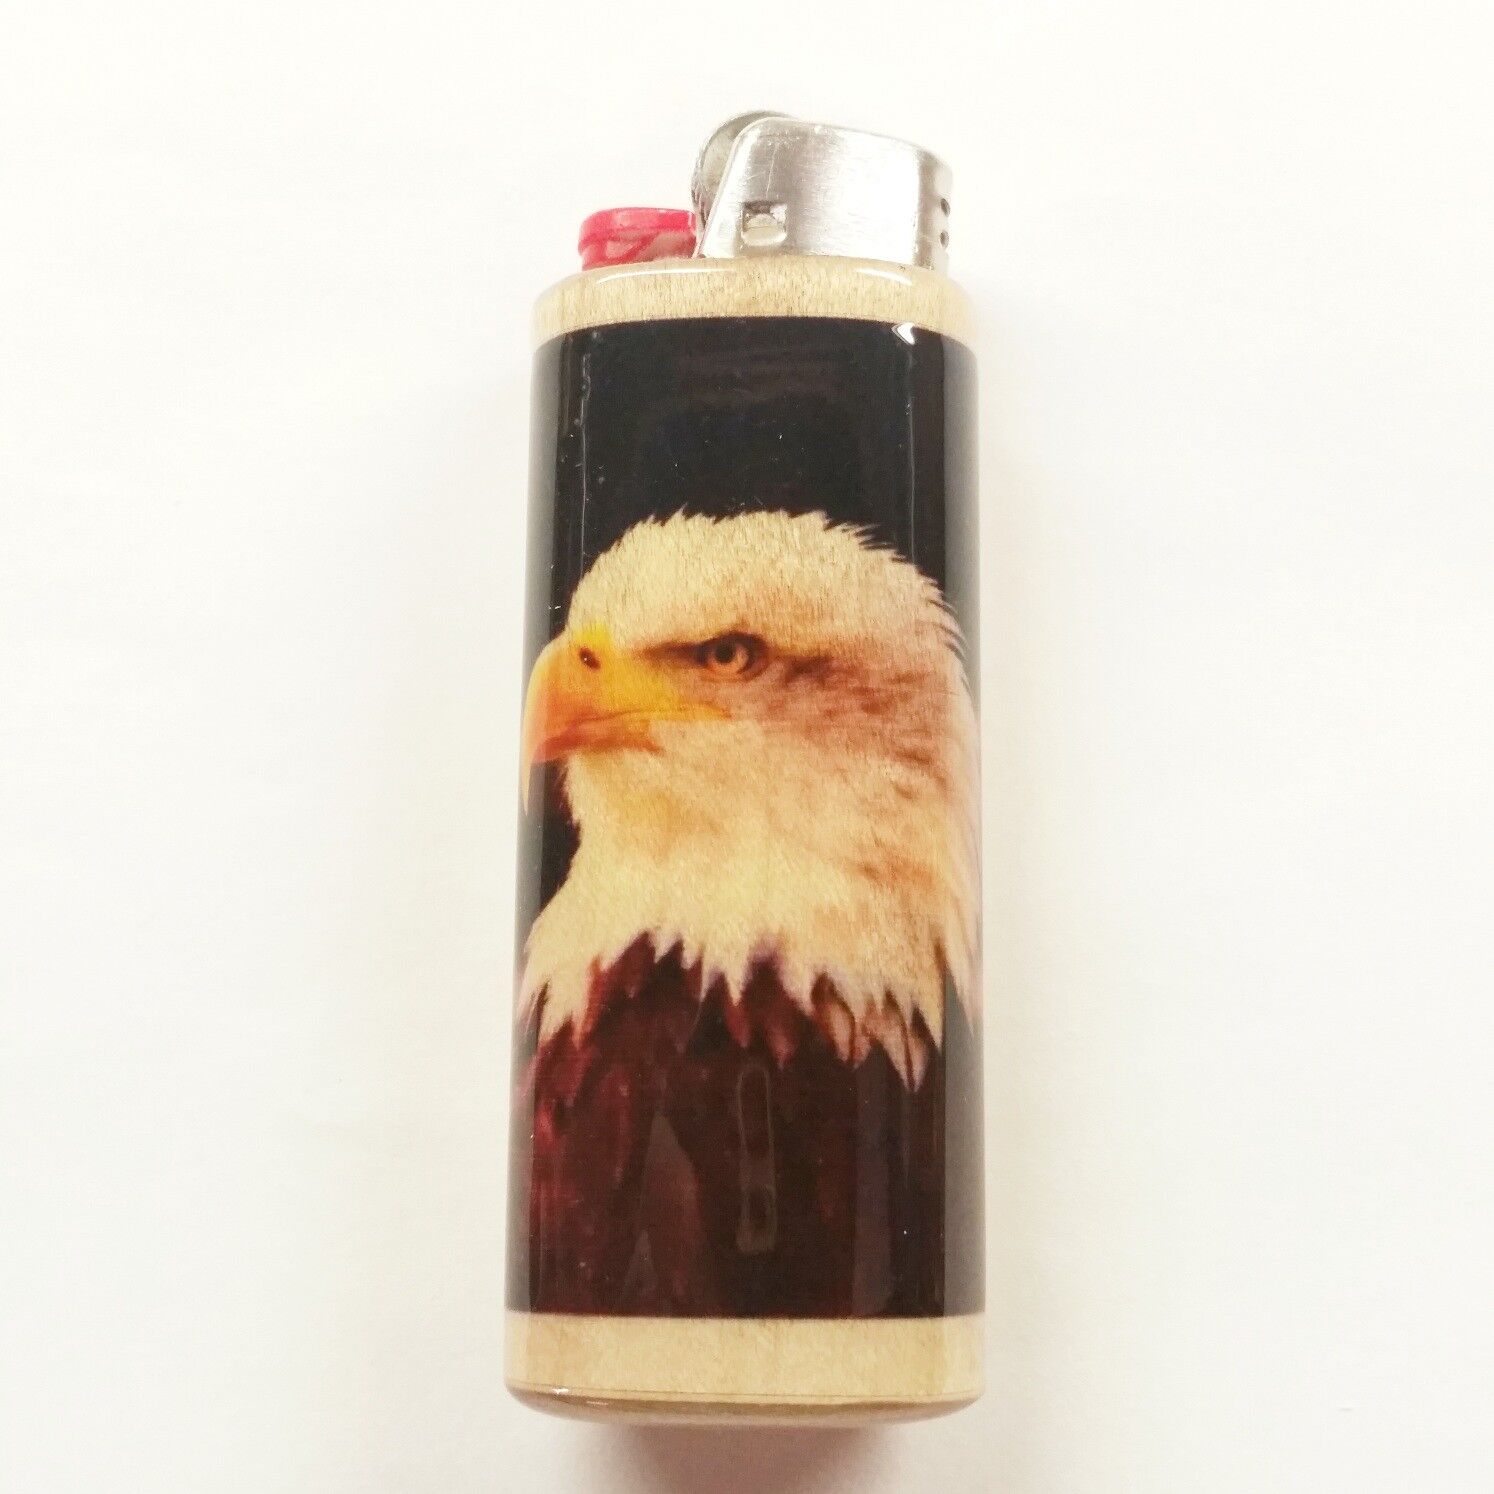 American Bald Eagle Lighter Case Holder Sleeve Cover Fits Bic Lighters